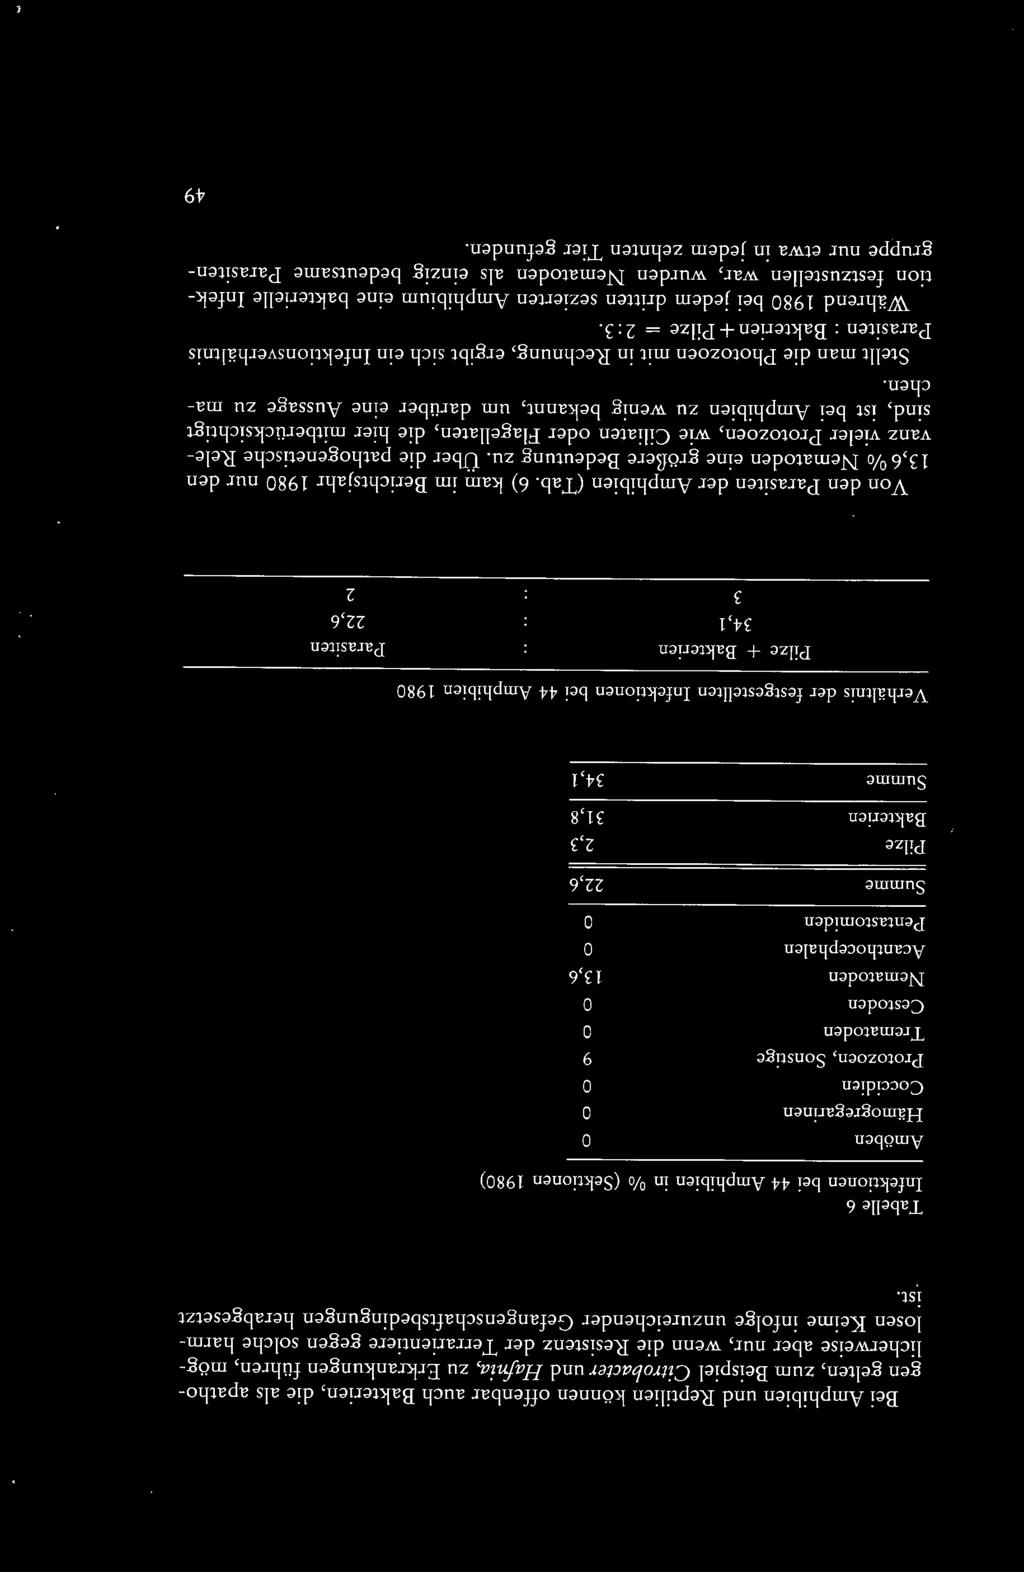 Tabelle 6 Infektionen bei 44 Amphibien in % (Sektionen 1980) Amöben 0 Hämogregarinen 0 Coccidien 0 Protozoen, Sonstige 9 Trematoden 0 Cestoden 0 Nematoden 13,6 Acanthocephalen 0 Pentastomiden 0 Summe